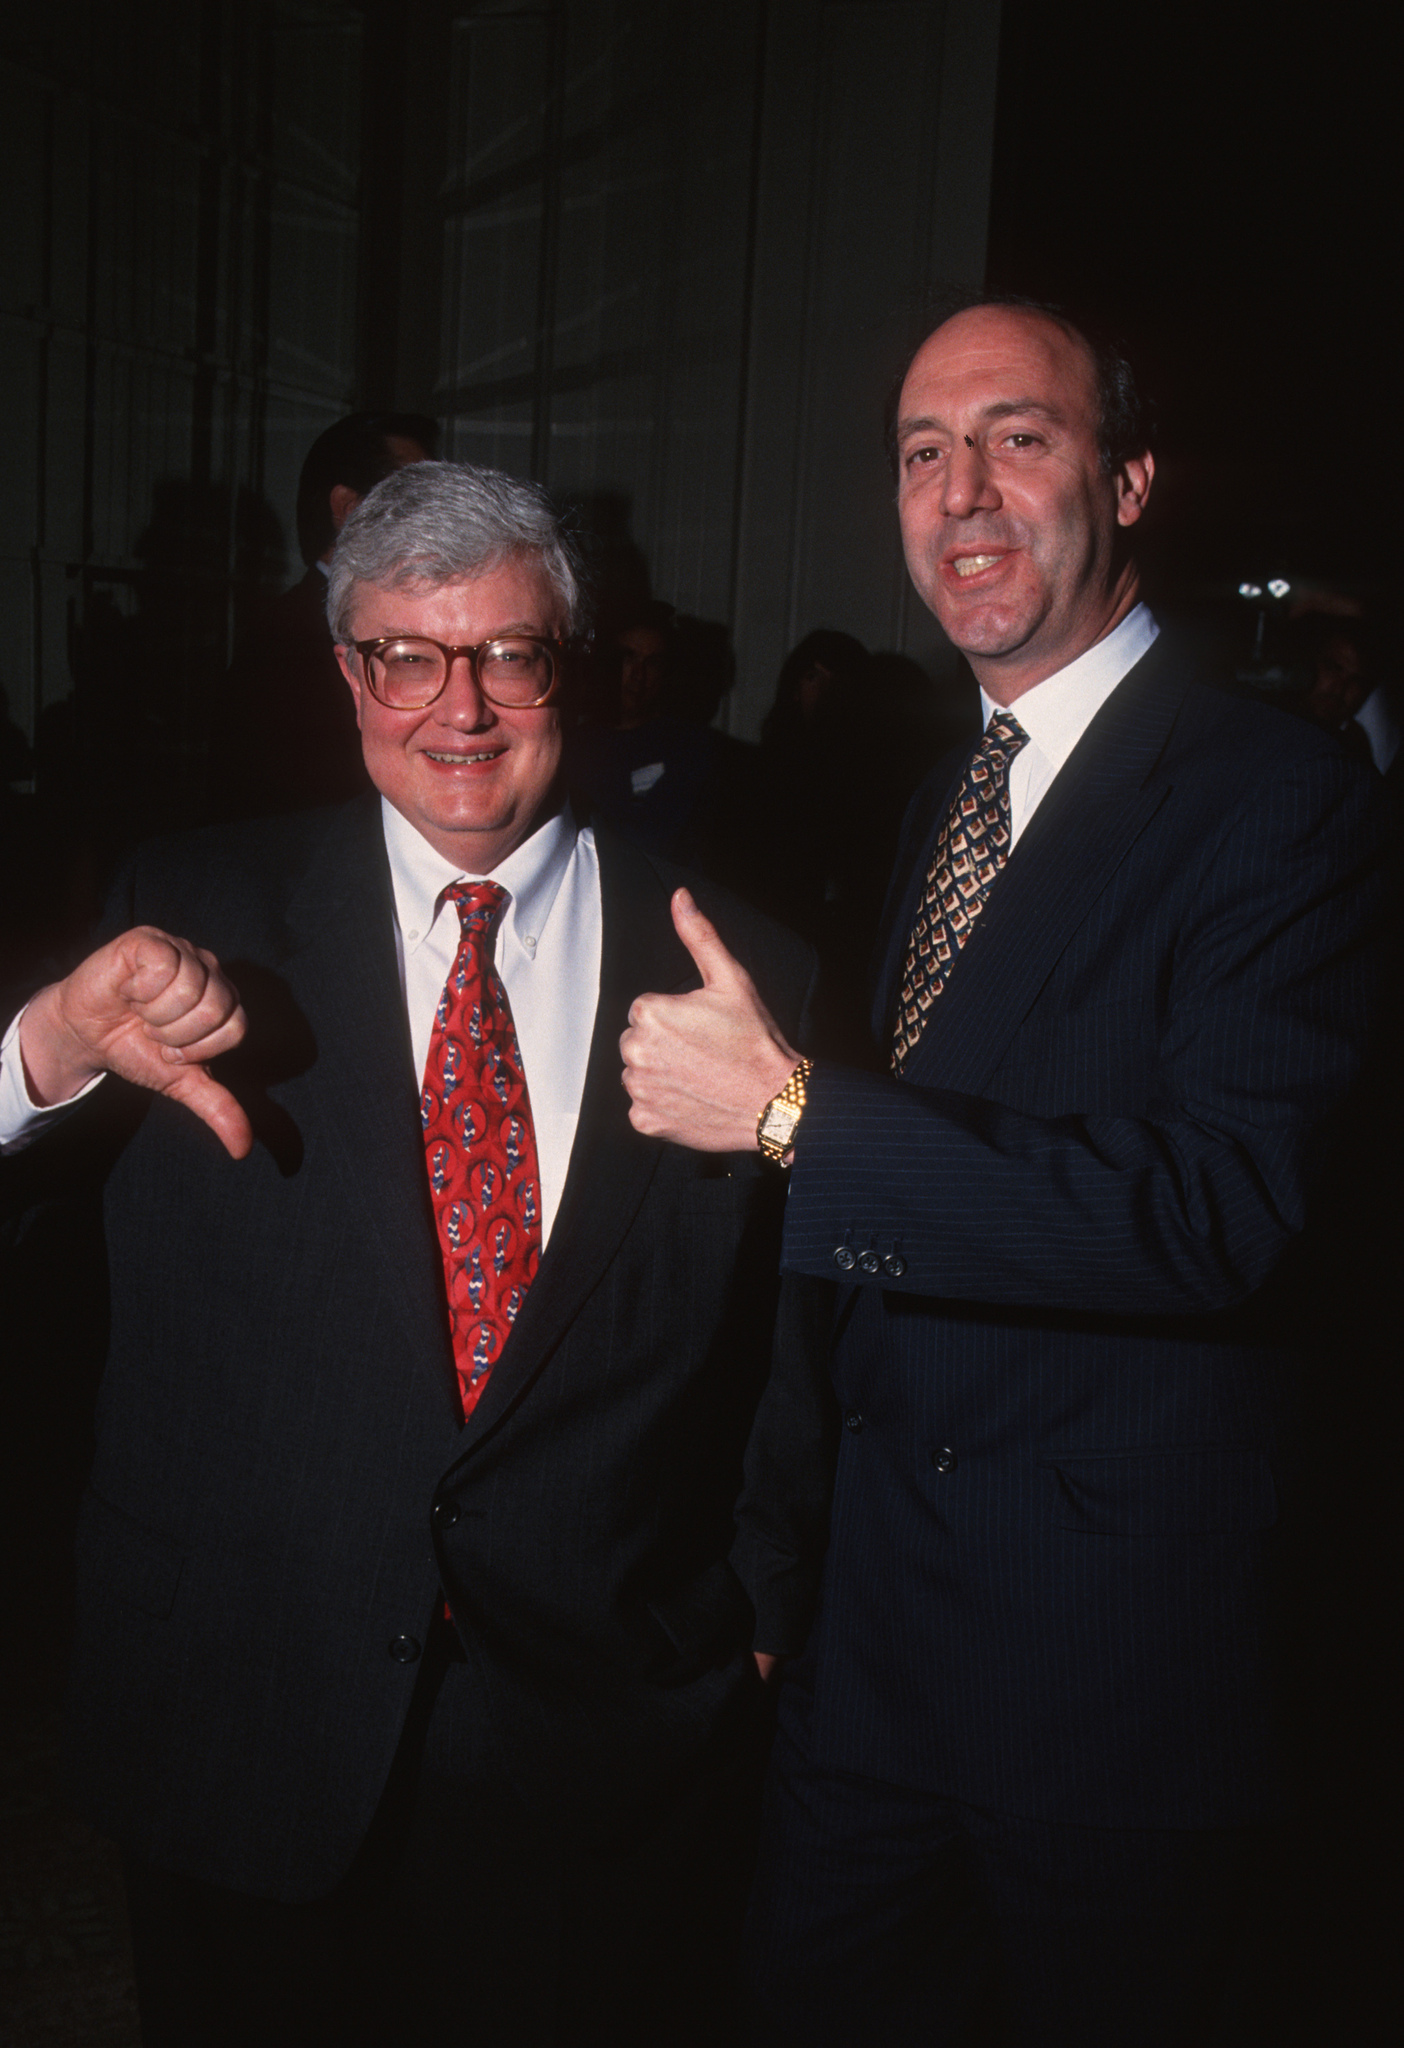 Roger Ebert and Gene Siskel